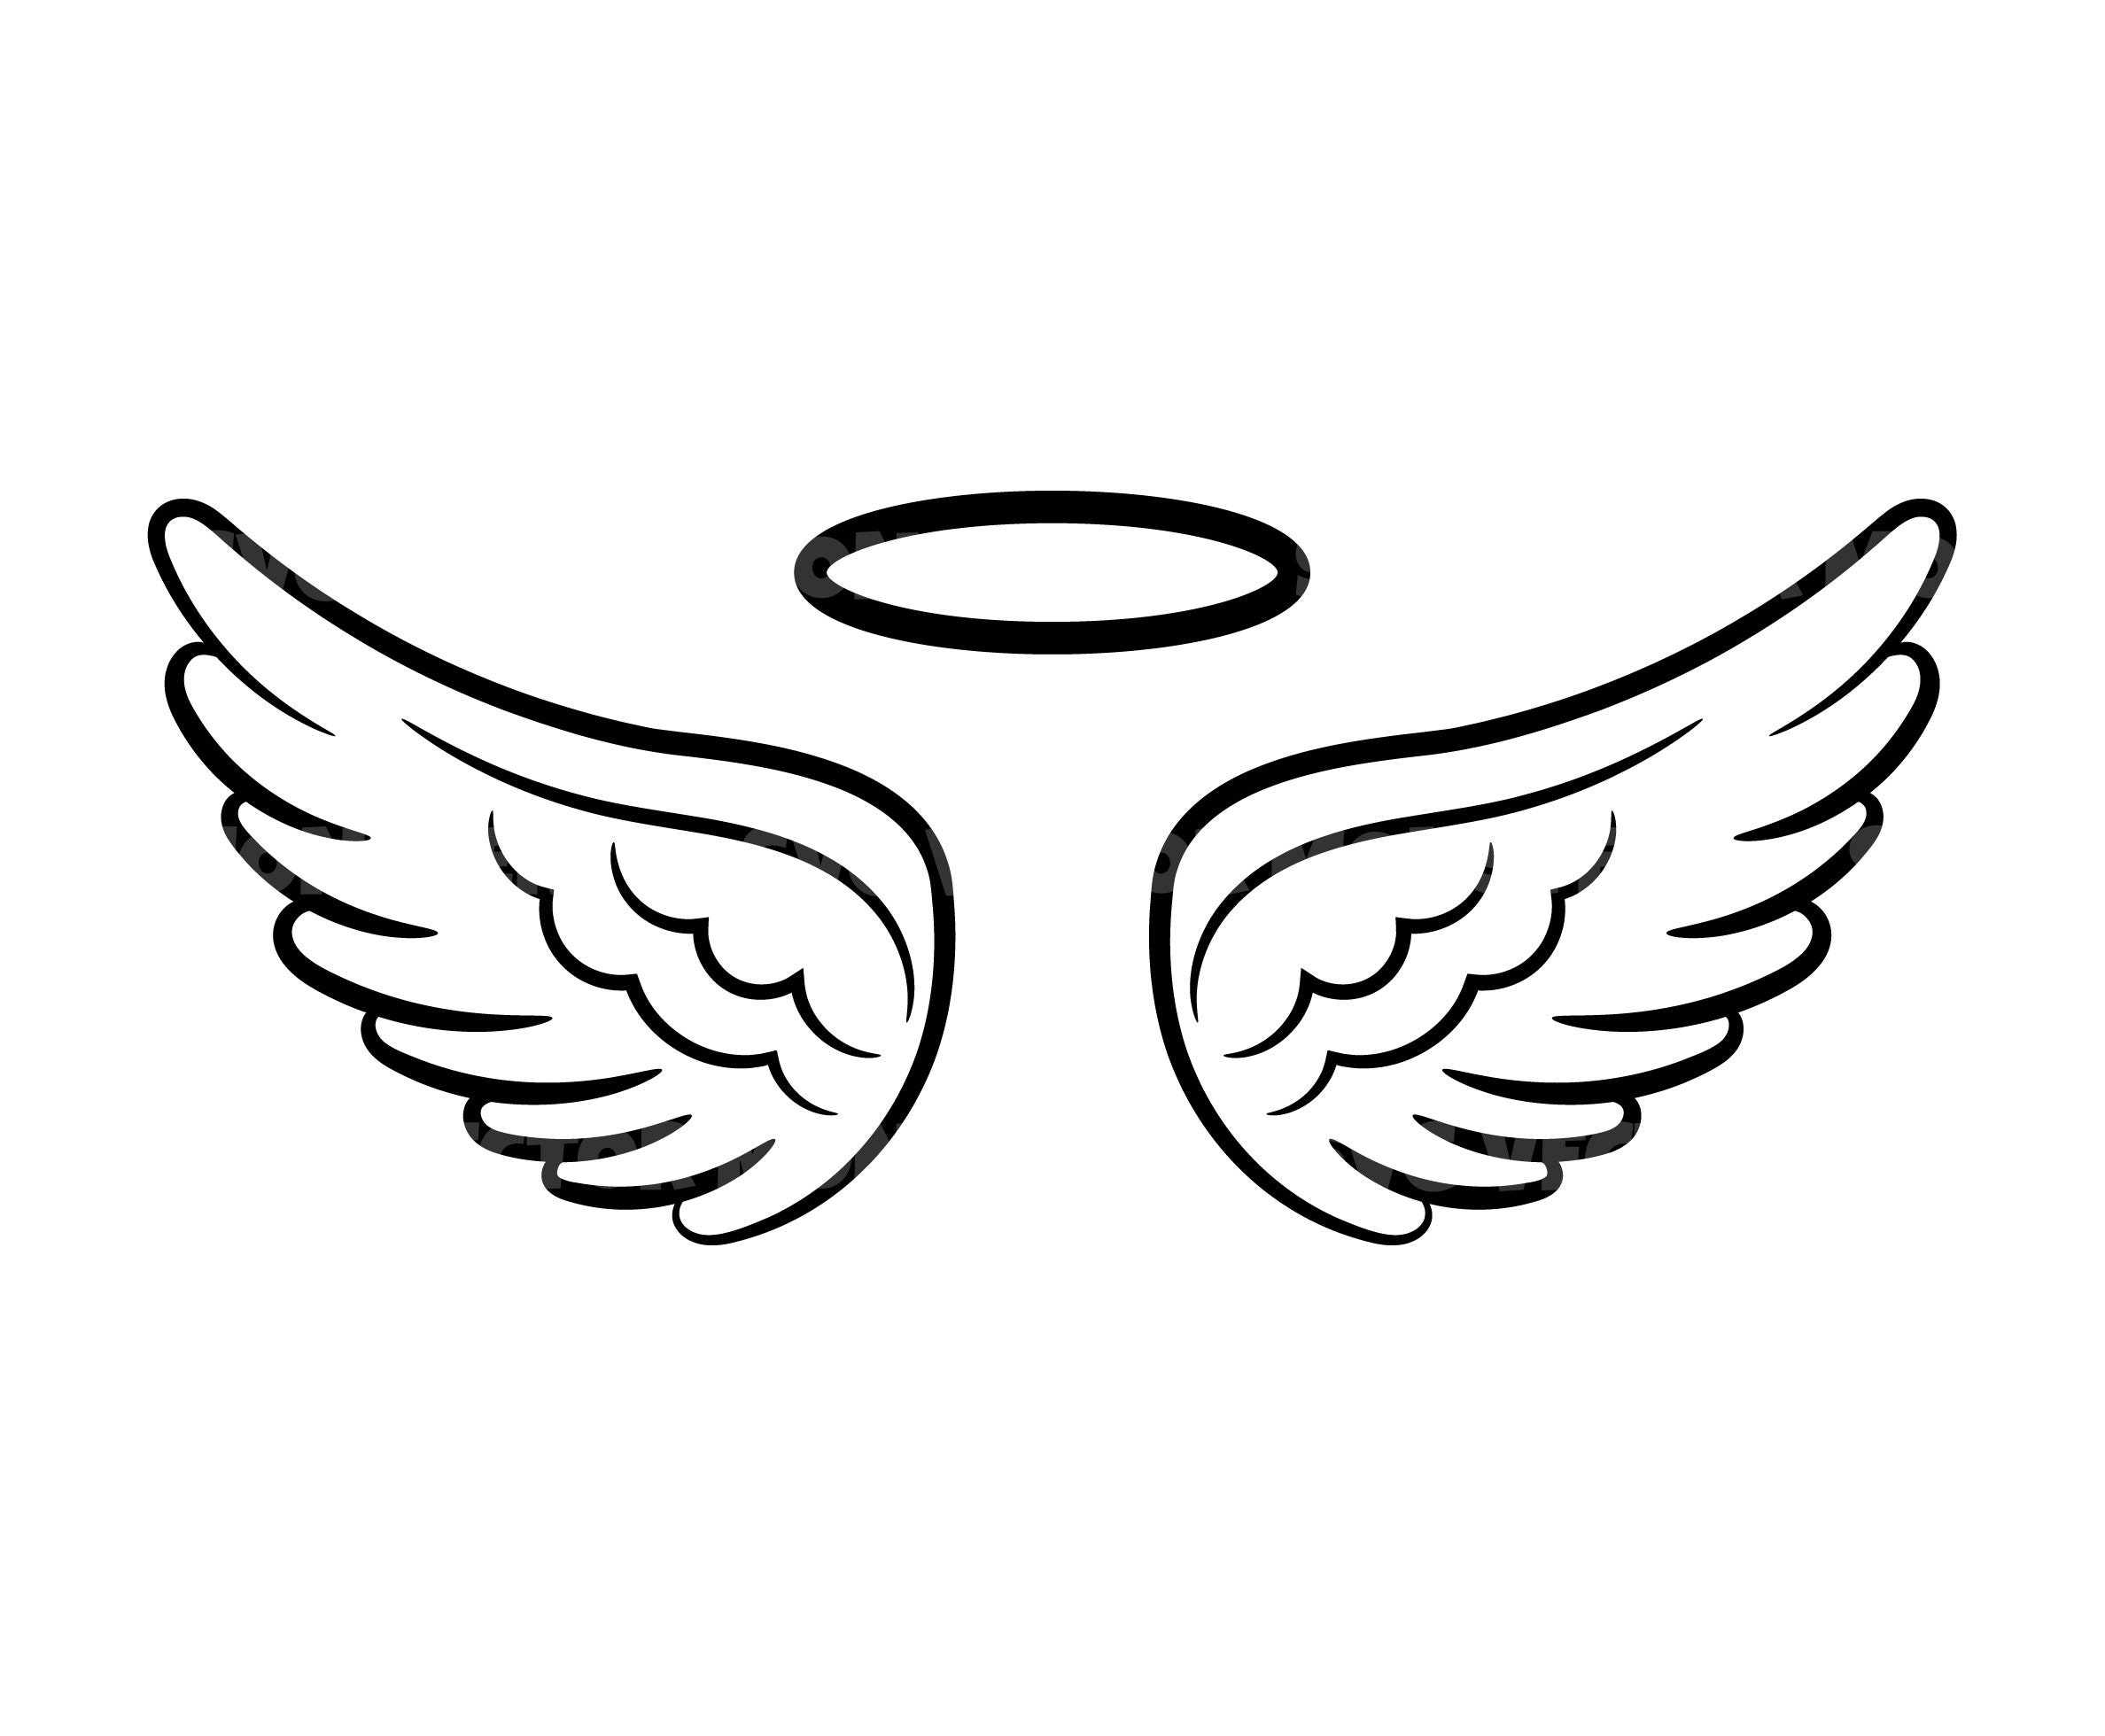 7. Angel Wings Design - wide 2